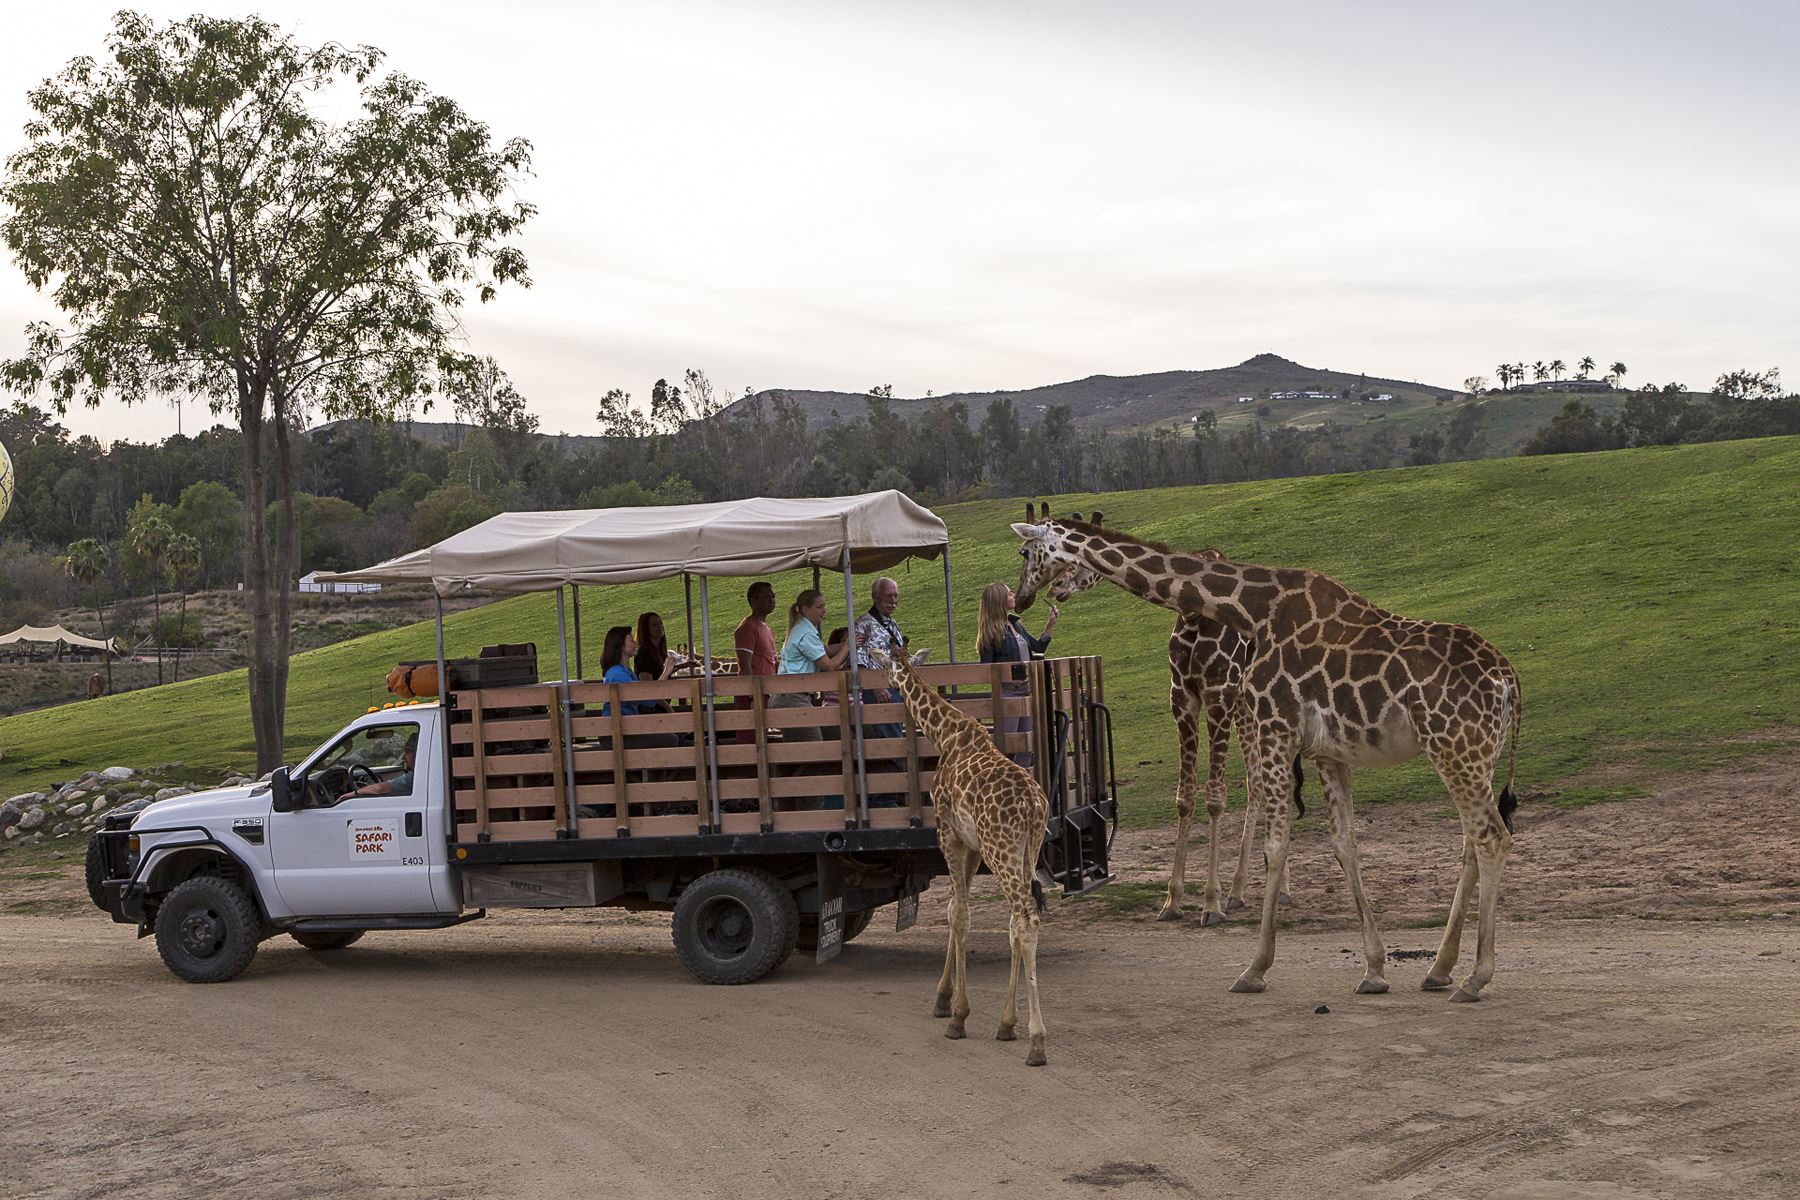 San diego safari park courtkesil